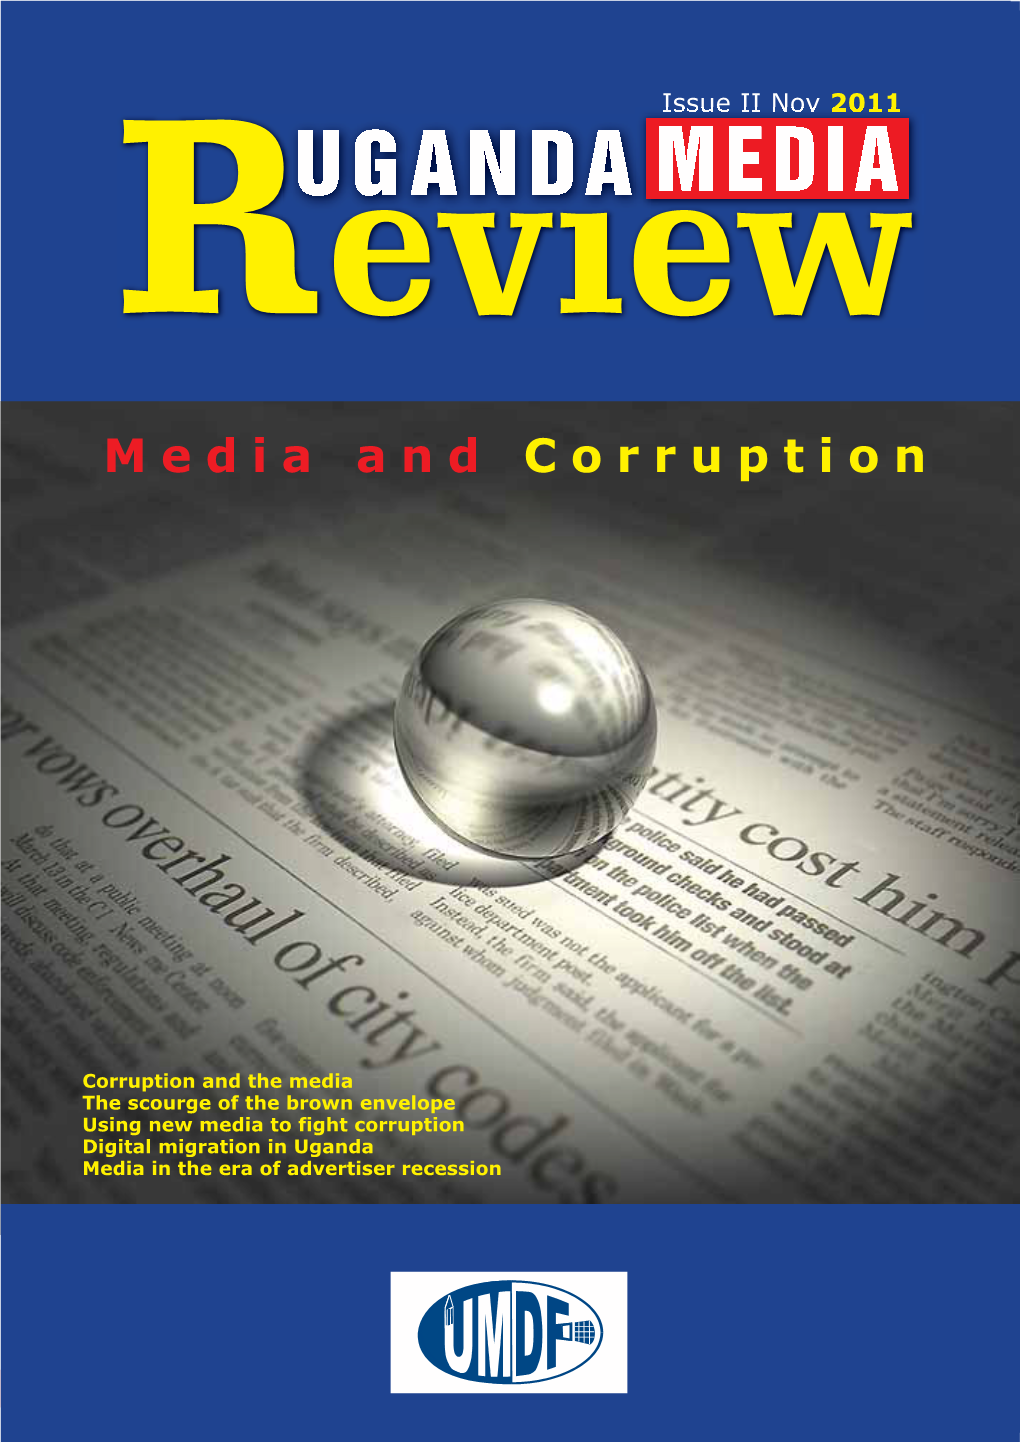 Media and Corruption Page 1 MEDIA and CORRUPTION